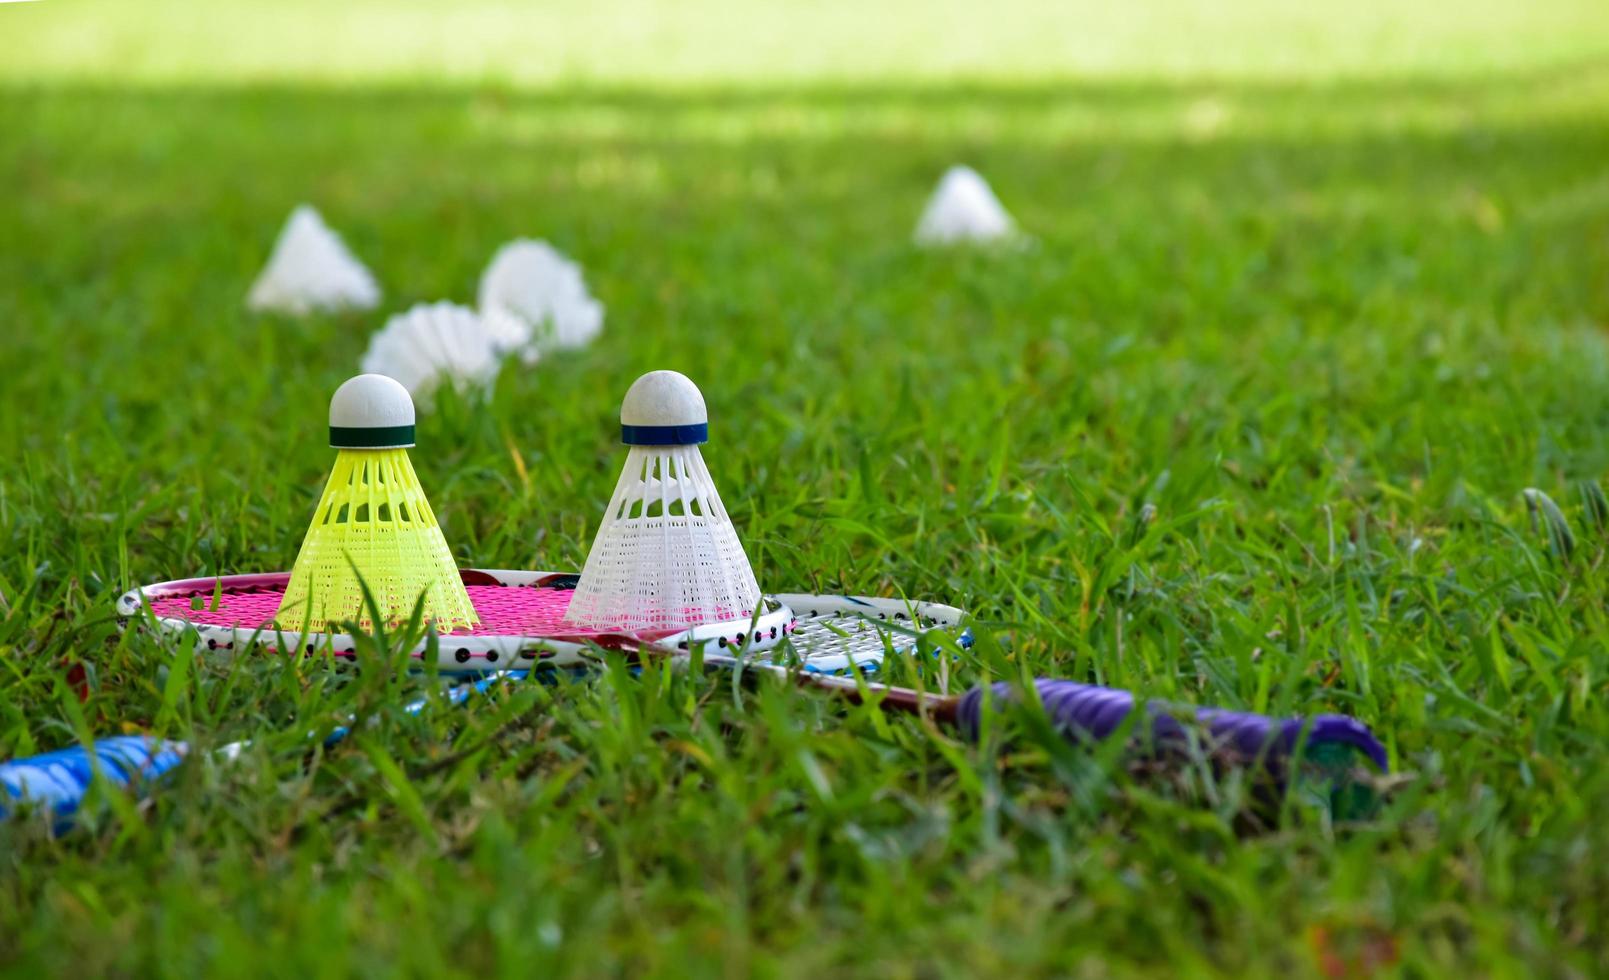 équipements de badminton en plein air volants et raquettes de badminton, sur pelouse, mise au point douce et sélective sur les volants, concept de jeu de badminton en plein air photo